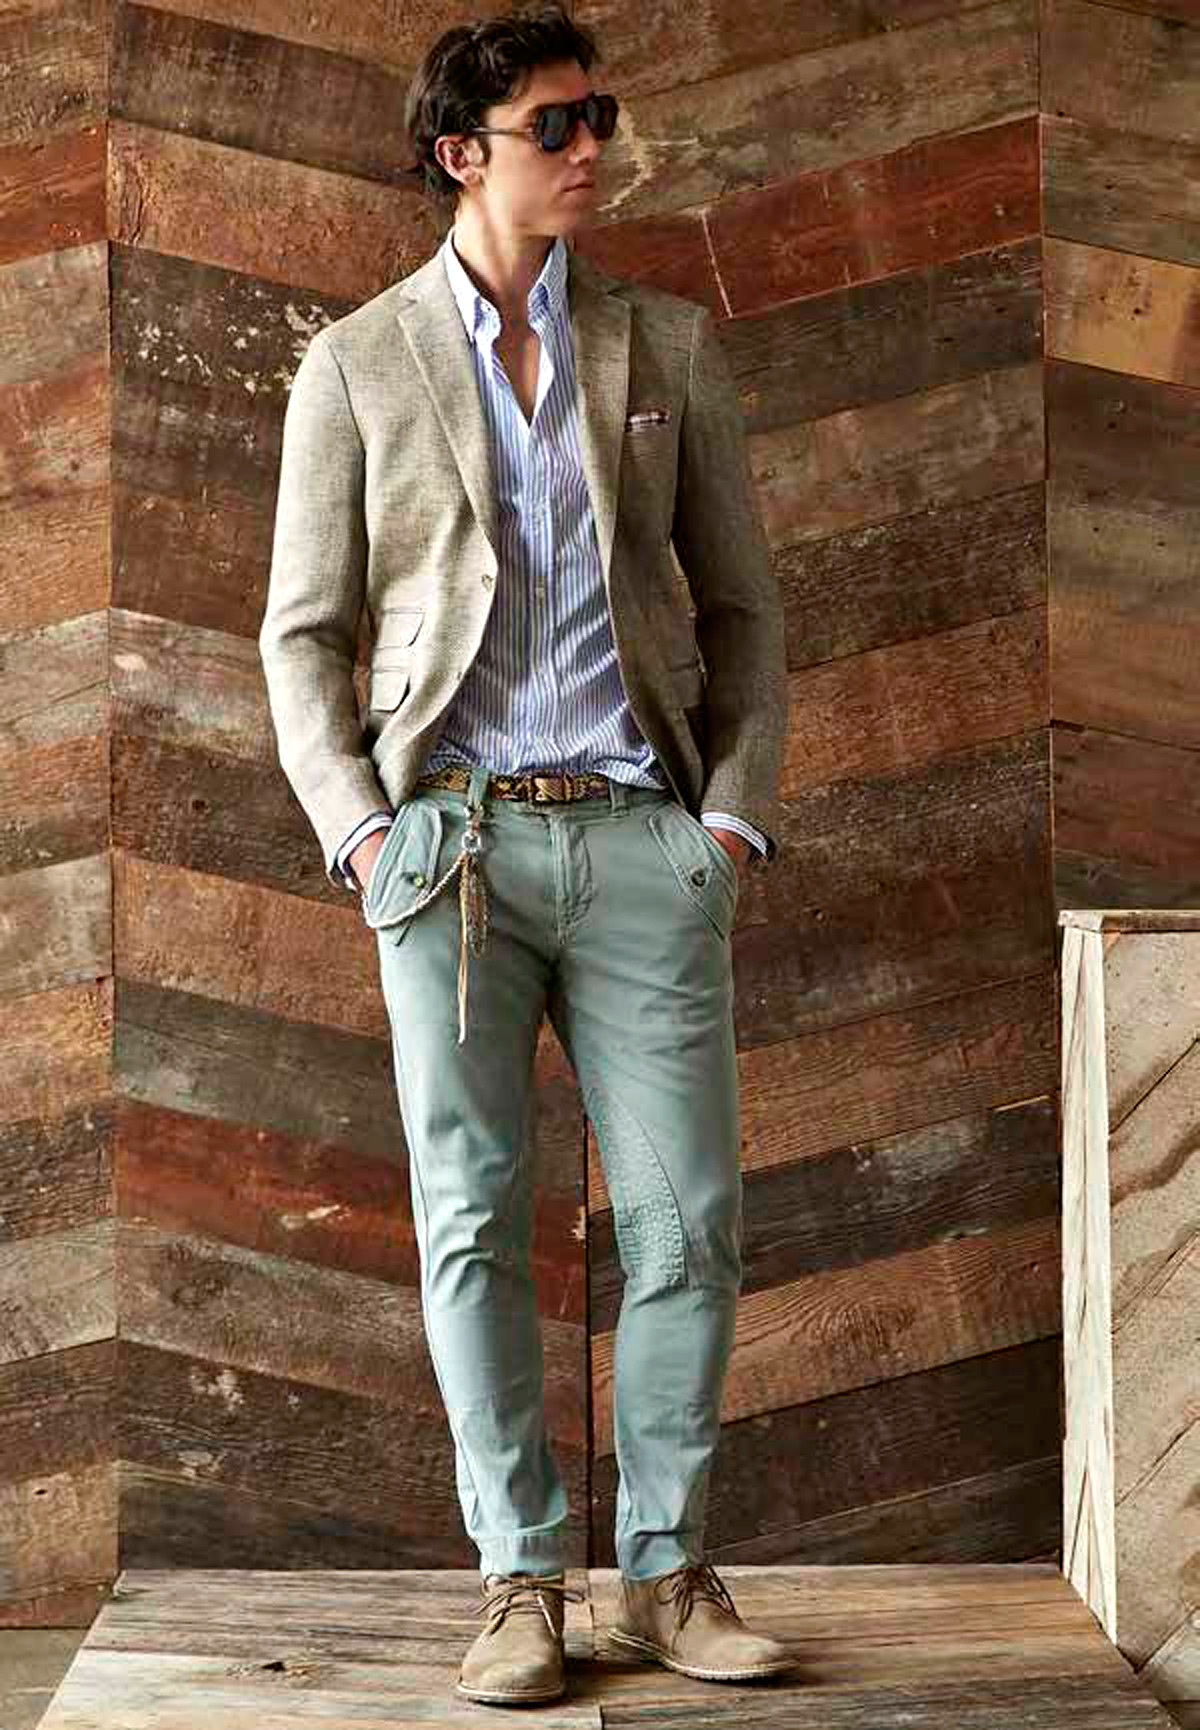 Светлые джинсы с чем носить мужчинам: с чем мужчинам носить летние джинсы светло- и бело-голубого цвета?